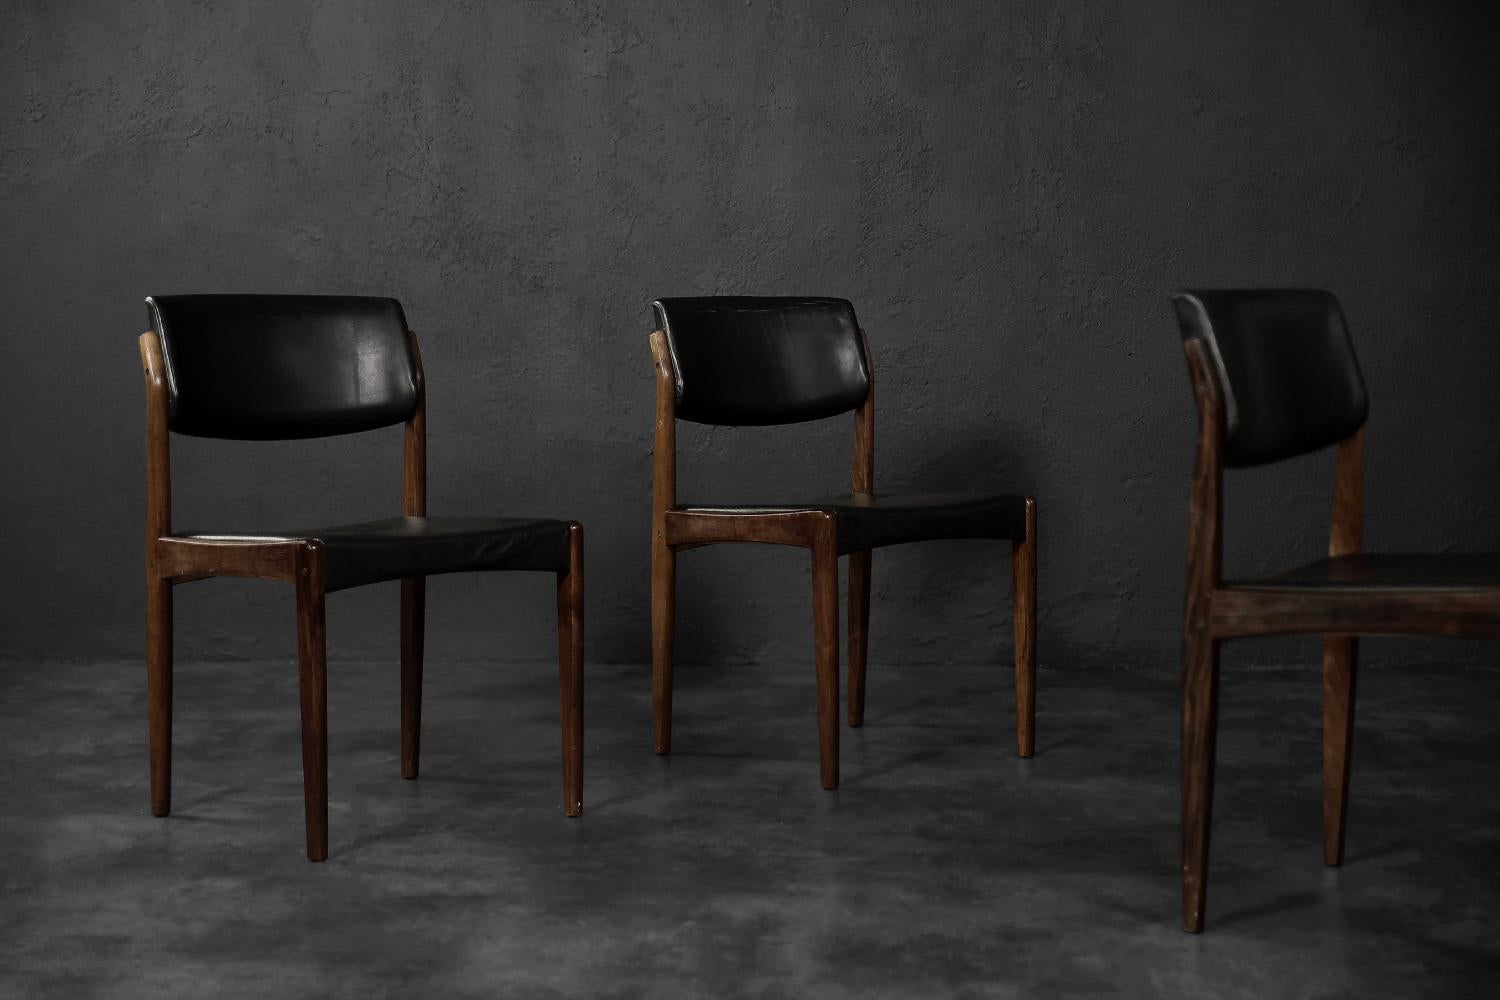 Dieses Set aus drei modernistischen Stühlen wurde von H.W. entworfen. Klein in den 1960er Jahren für den dänischen Hersteller Bramin. Das Gestell der Stühle ist aus dunkelbraunem Palisanderholz gefertigt. Die Rückenlehne war leicht nach hinten